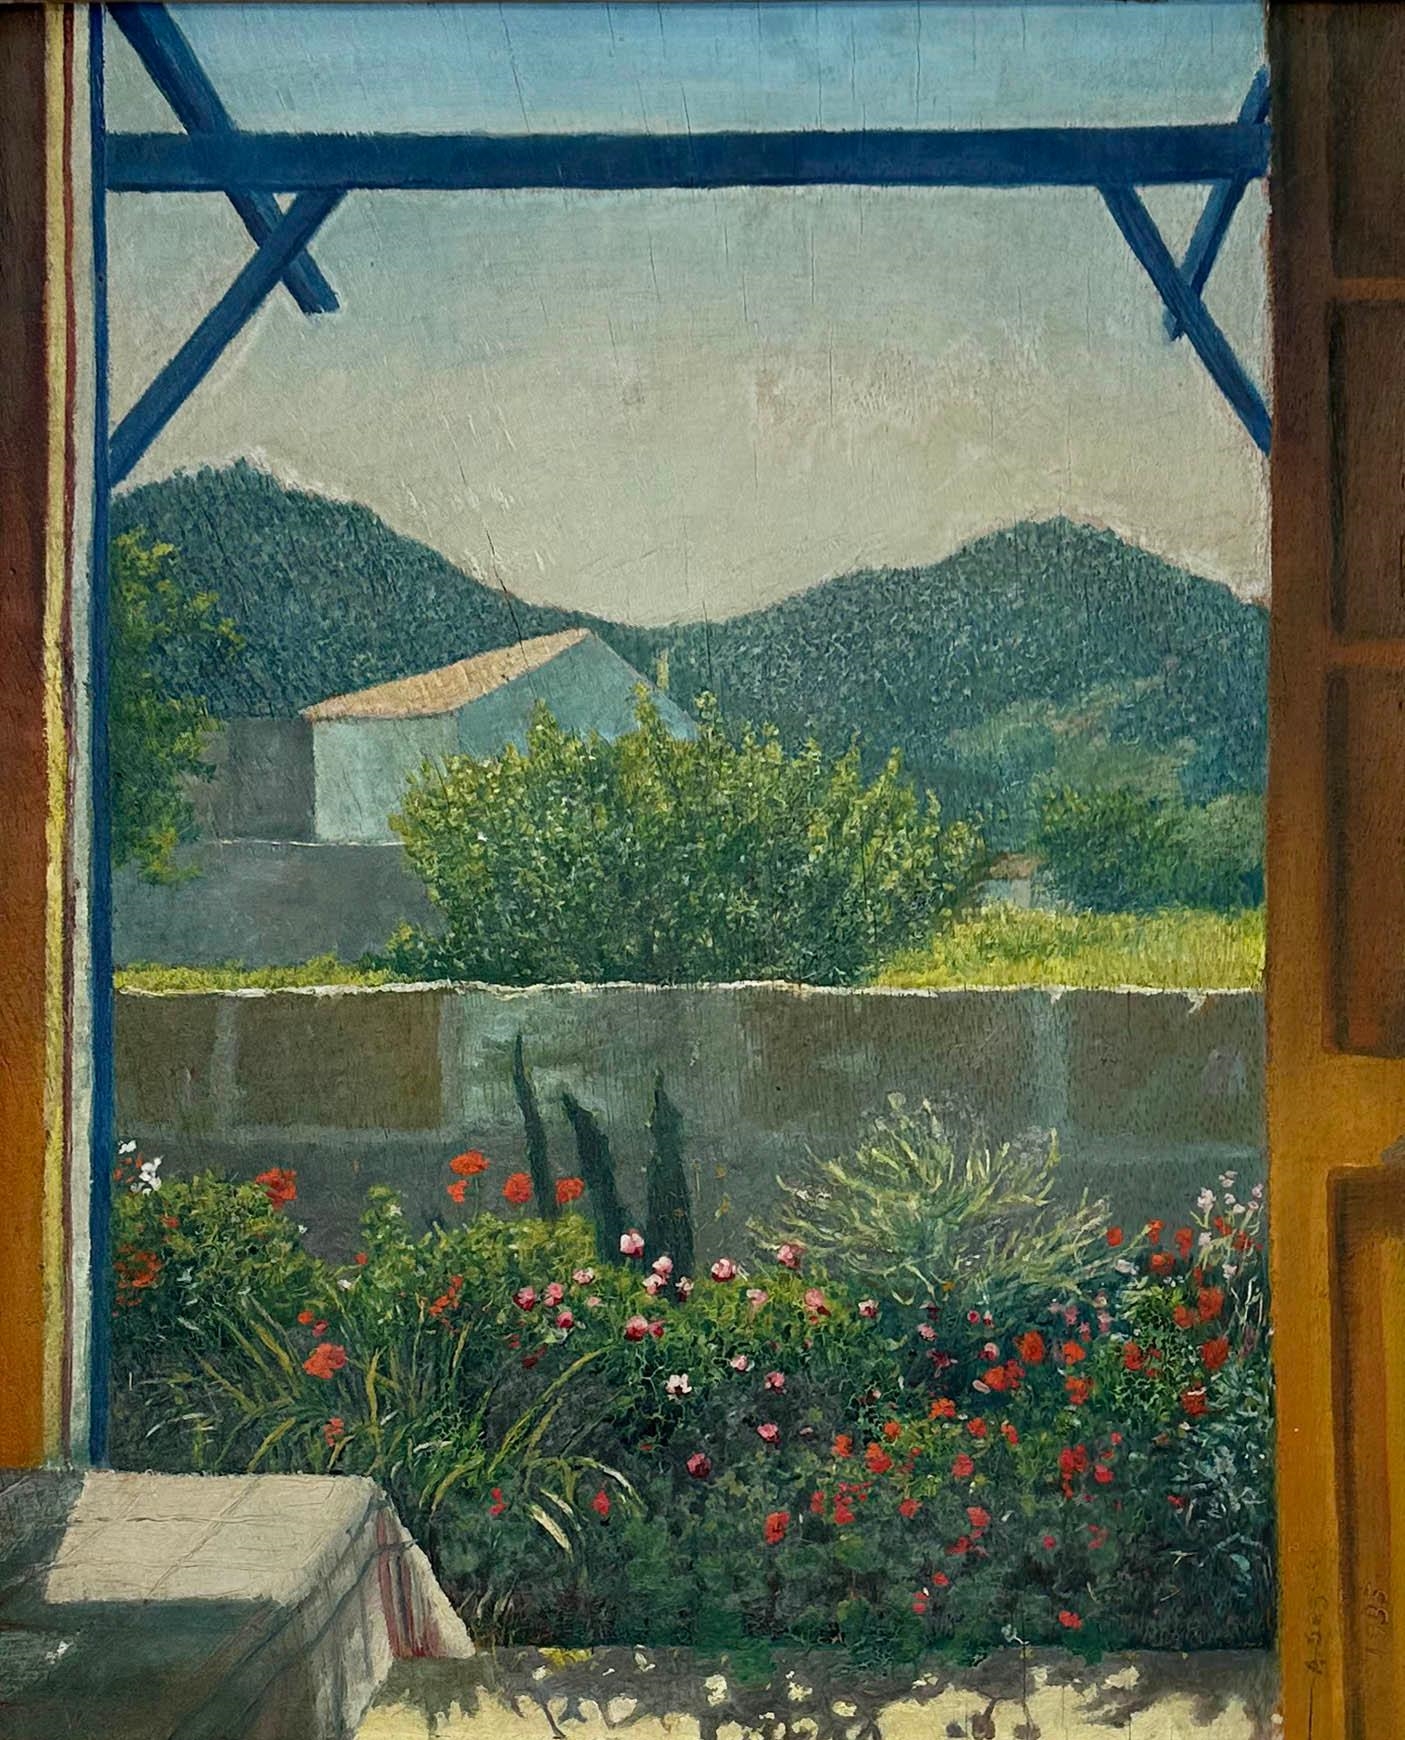 Palma de Mallorca by Arthur Segal, 1935